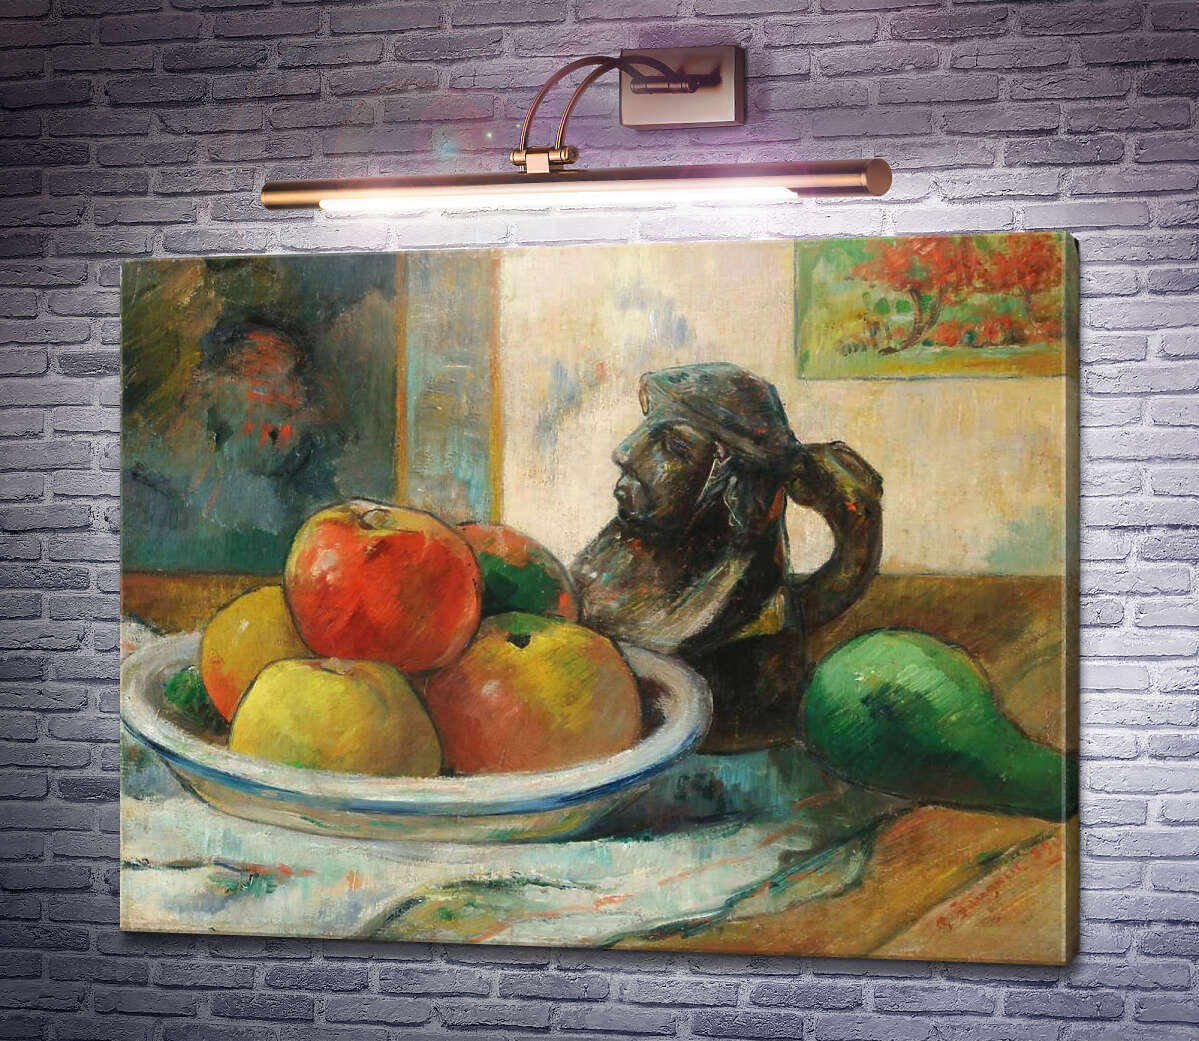 Картина Яблоки, груши и горшок, 1889 Поль Гоген